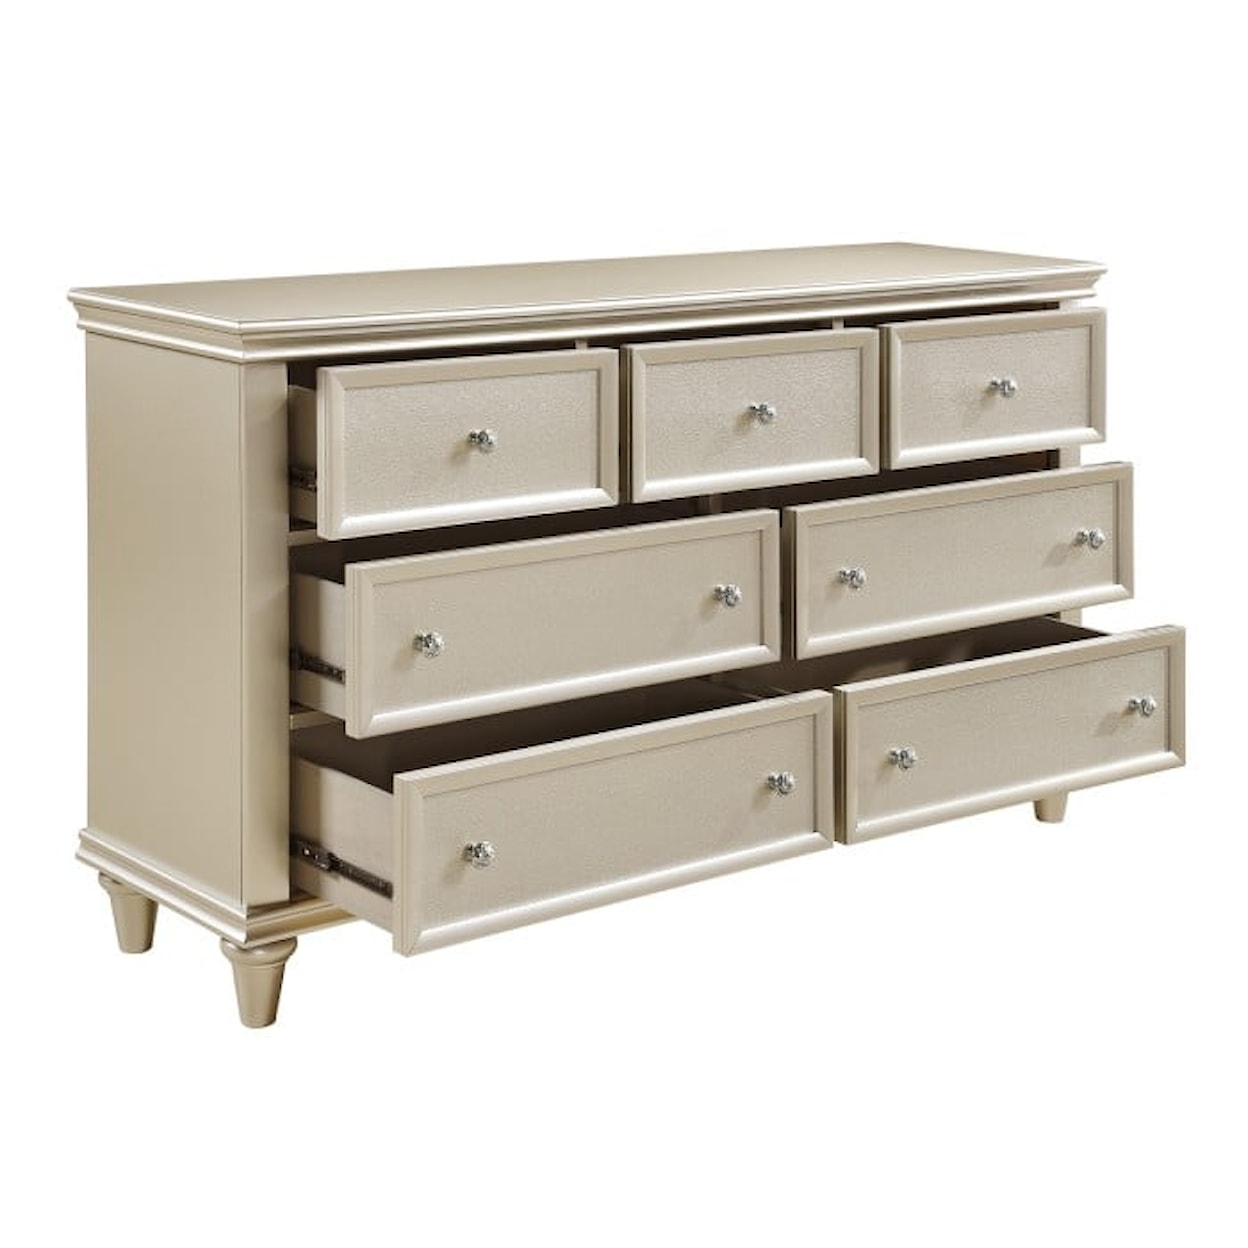 Homelegance Furniture Celandine 7 Drawer Dresser